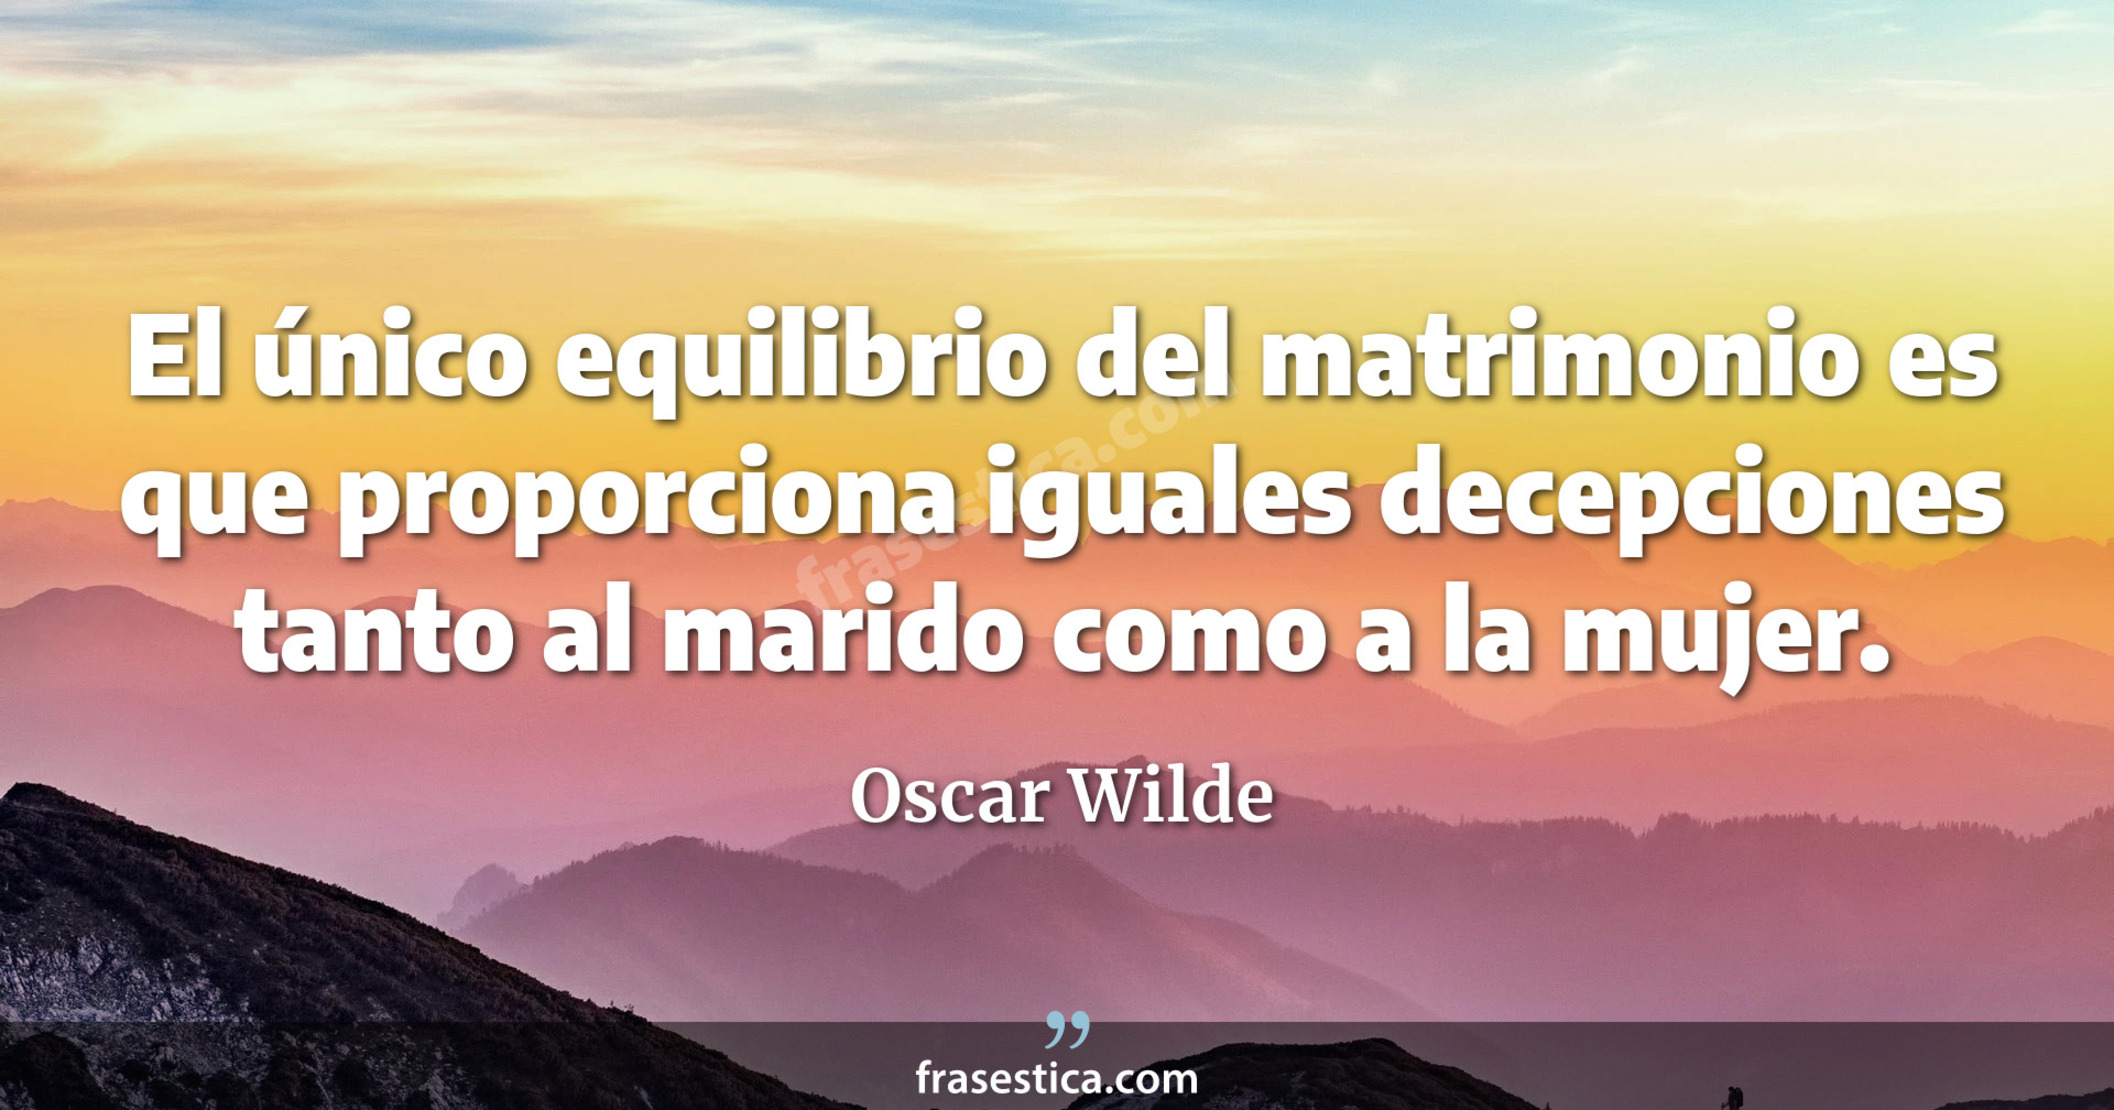 El único equilibrio del matrimonio es que proporciona iguales decepciones tanto al marido como a la mujer.  - Oscar Wilde